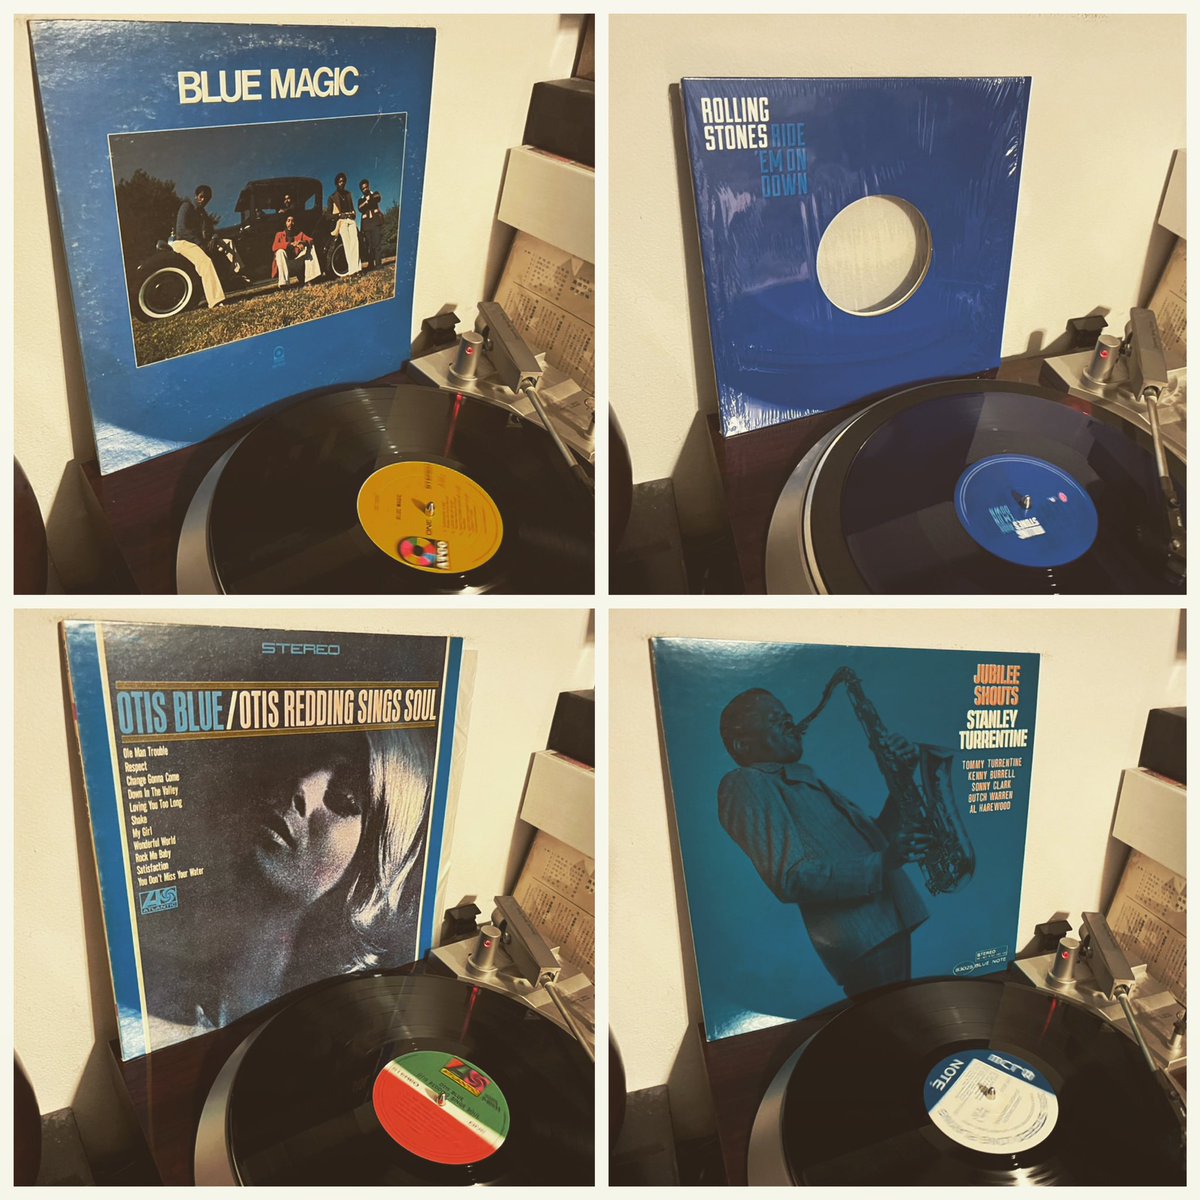 今日の4枚。
なんとなくブルーのジャケット縛りで聴いてみた。
もちろんどれも良いし好きだけど、今夜の気分だとタレンタインが優勝。78年のアルバムだけど62年の録音で、ソニー・クラークがいる。
#アナログ盤 #アナログレコード
#bluemagic #therollingstones #otisredding #stanleyturrentine